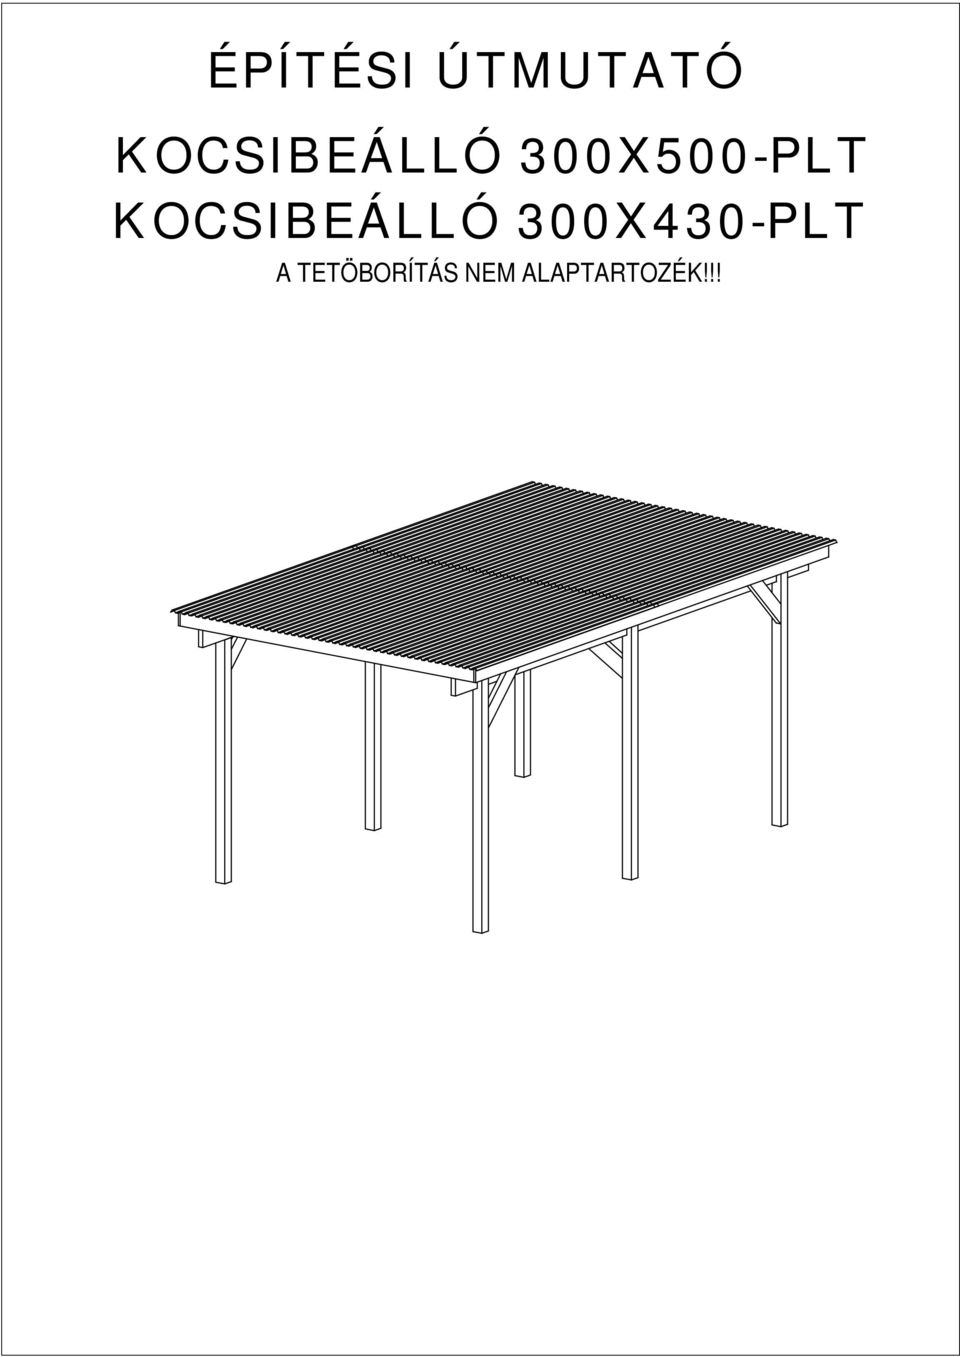 OCSIBEÁLLÓ 300X430-PLT A